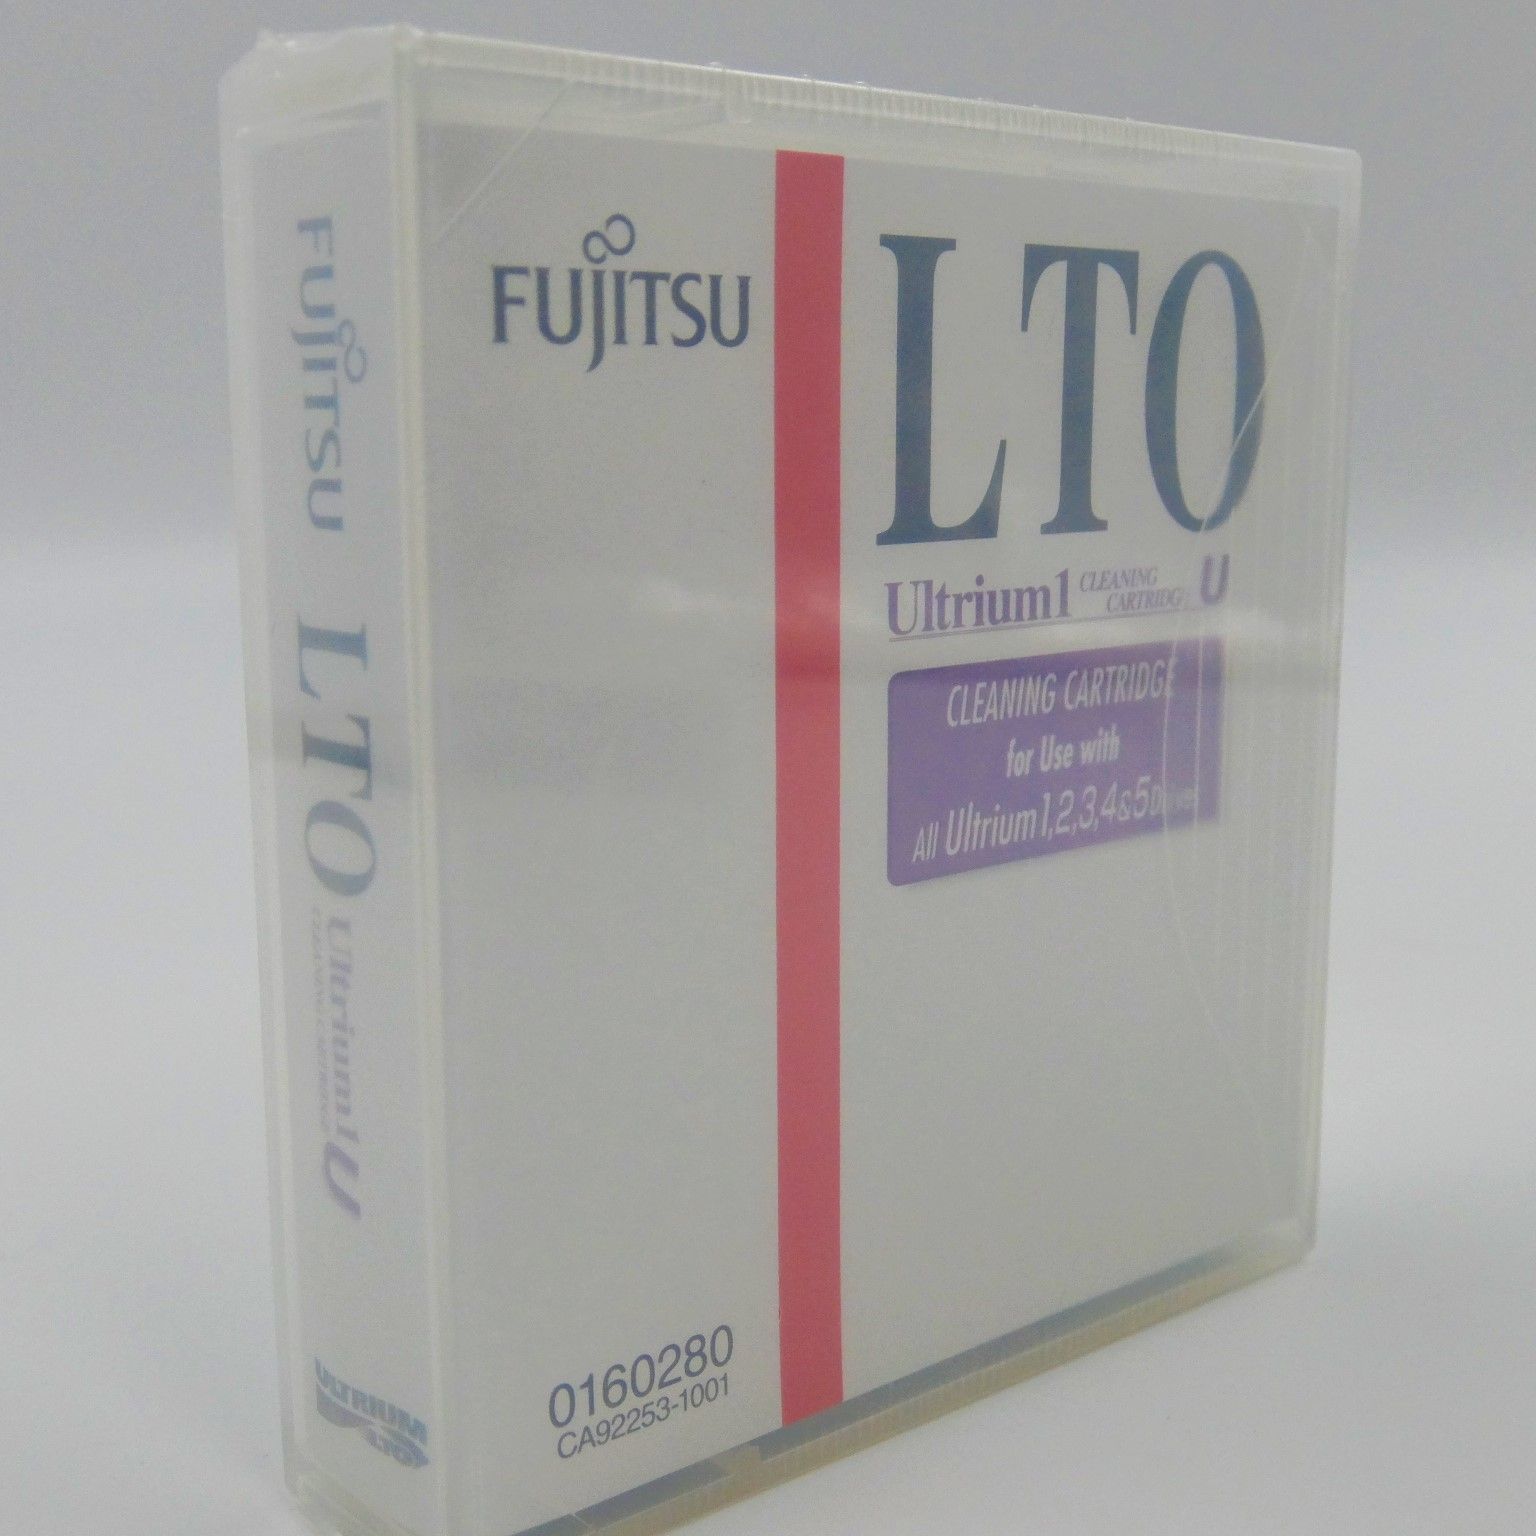 富士通 FUJITSU LTO Ultrium1 クリーニングカートリッジU 0160280